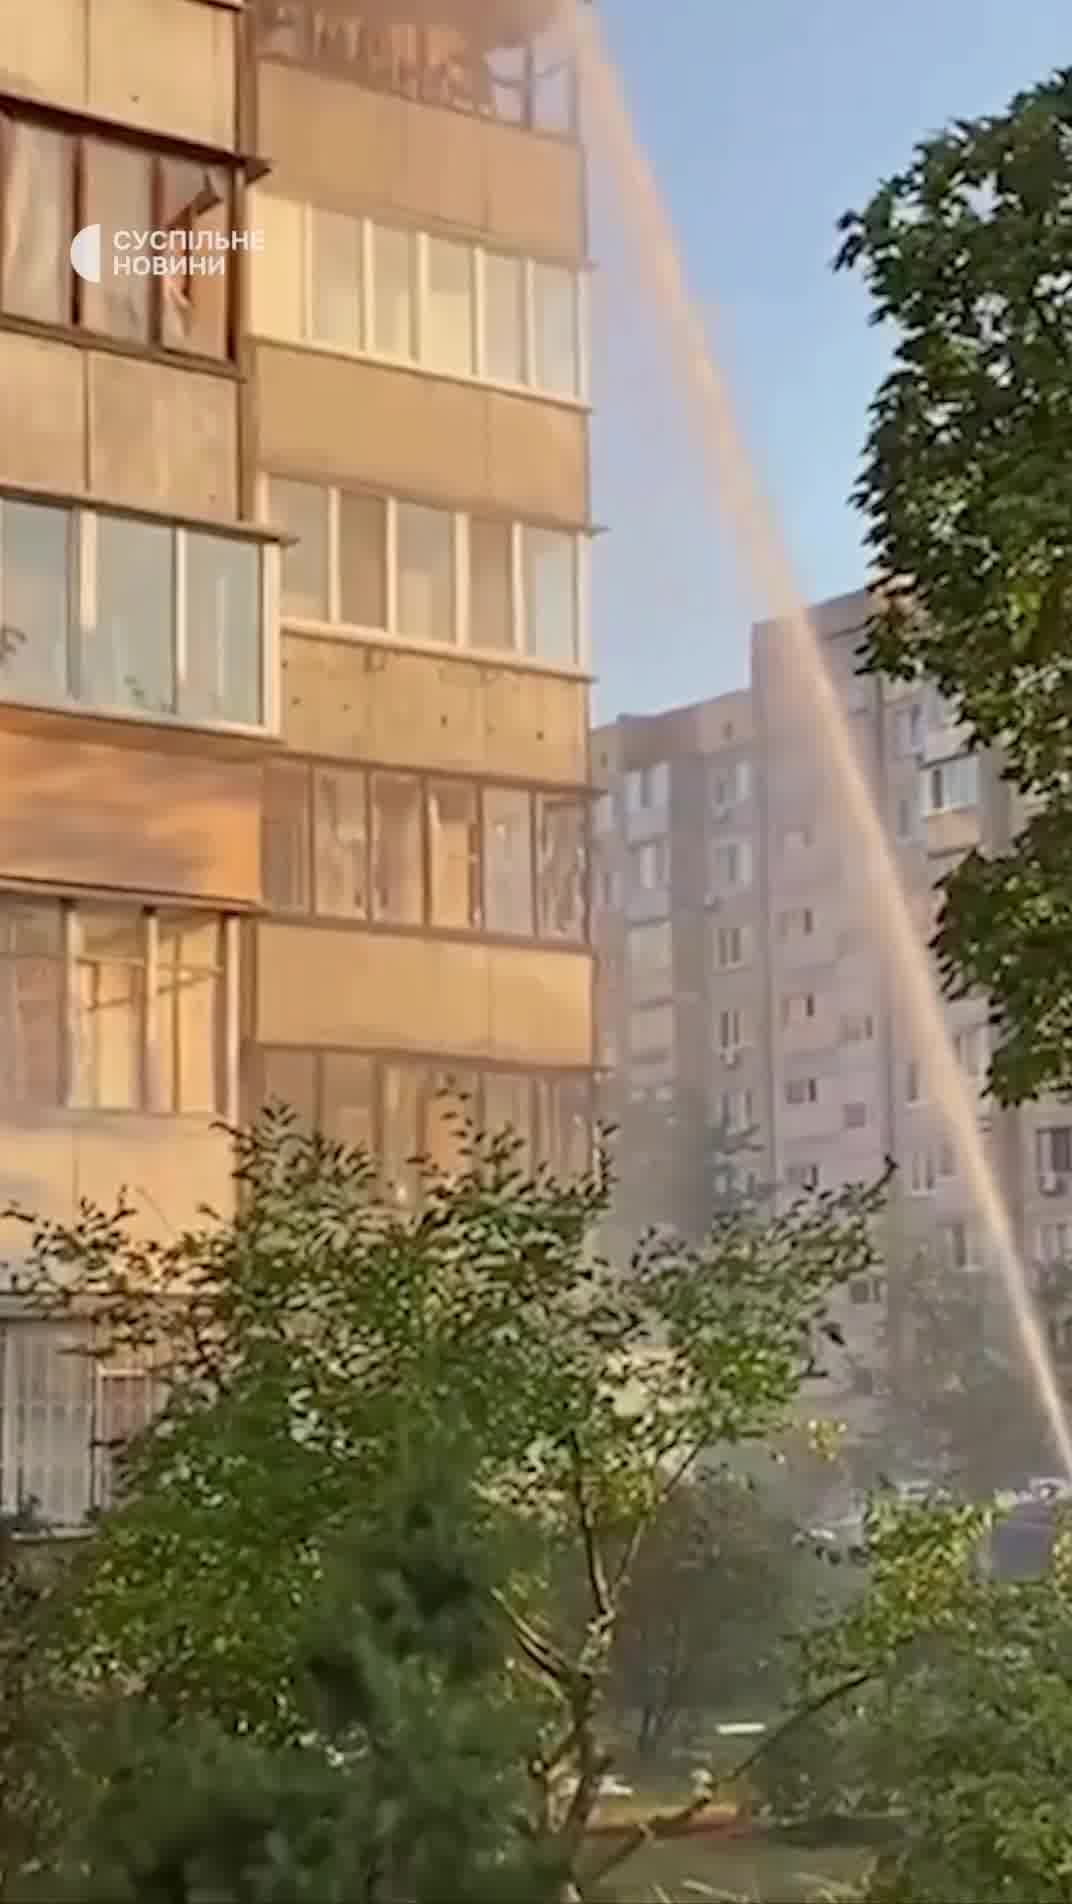 Edifici residencial danyat com a conseqüència de l'atac de míssils russos al districte d'Obolonsky de Kíev